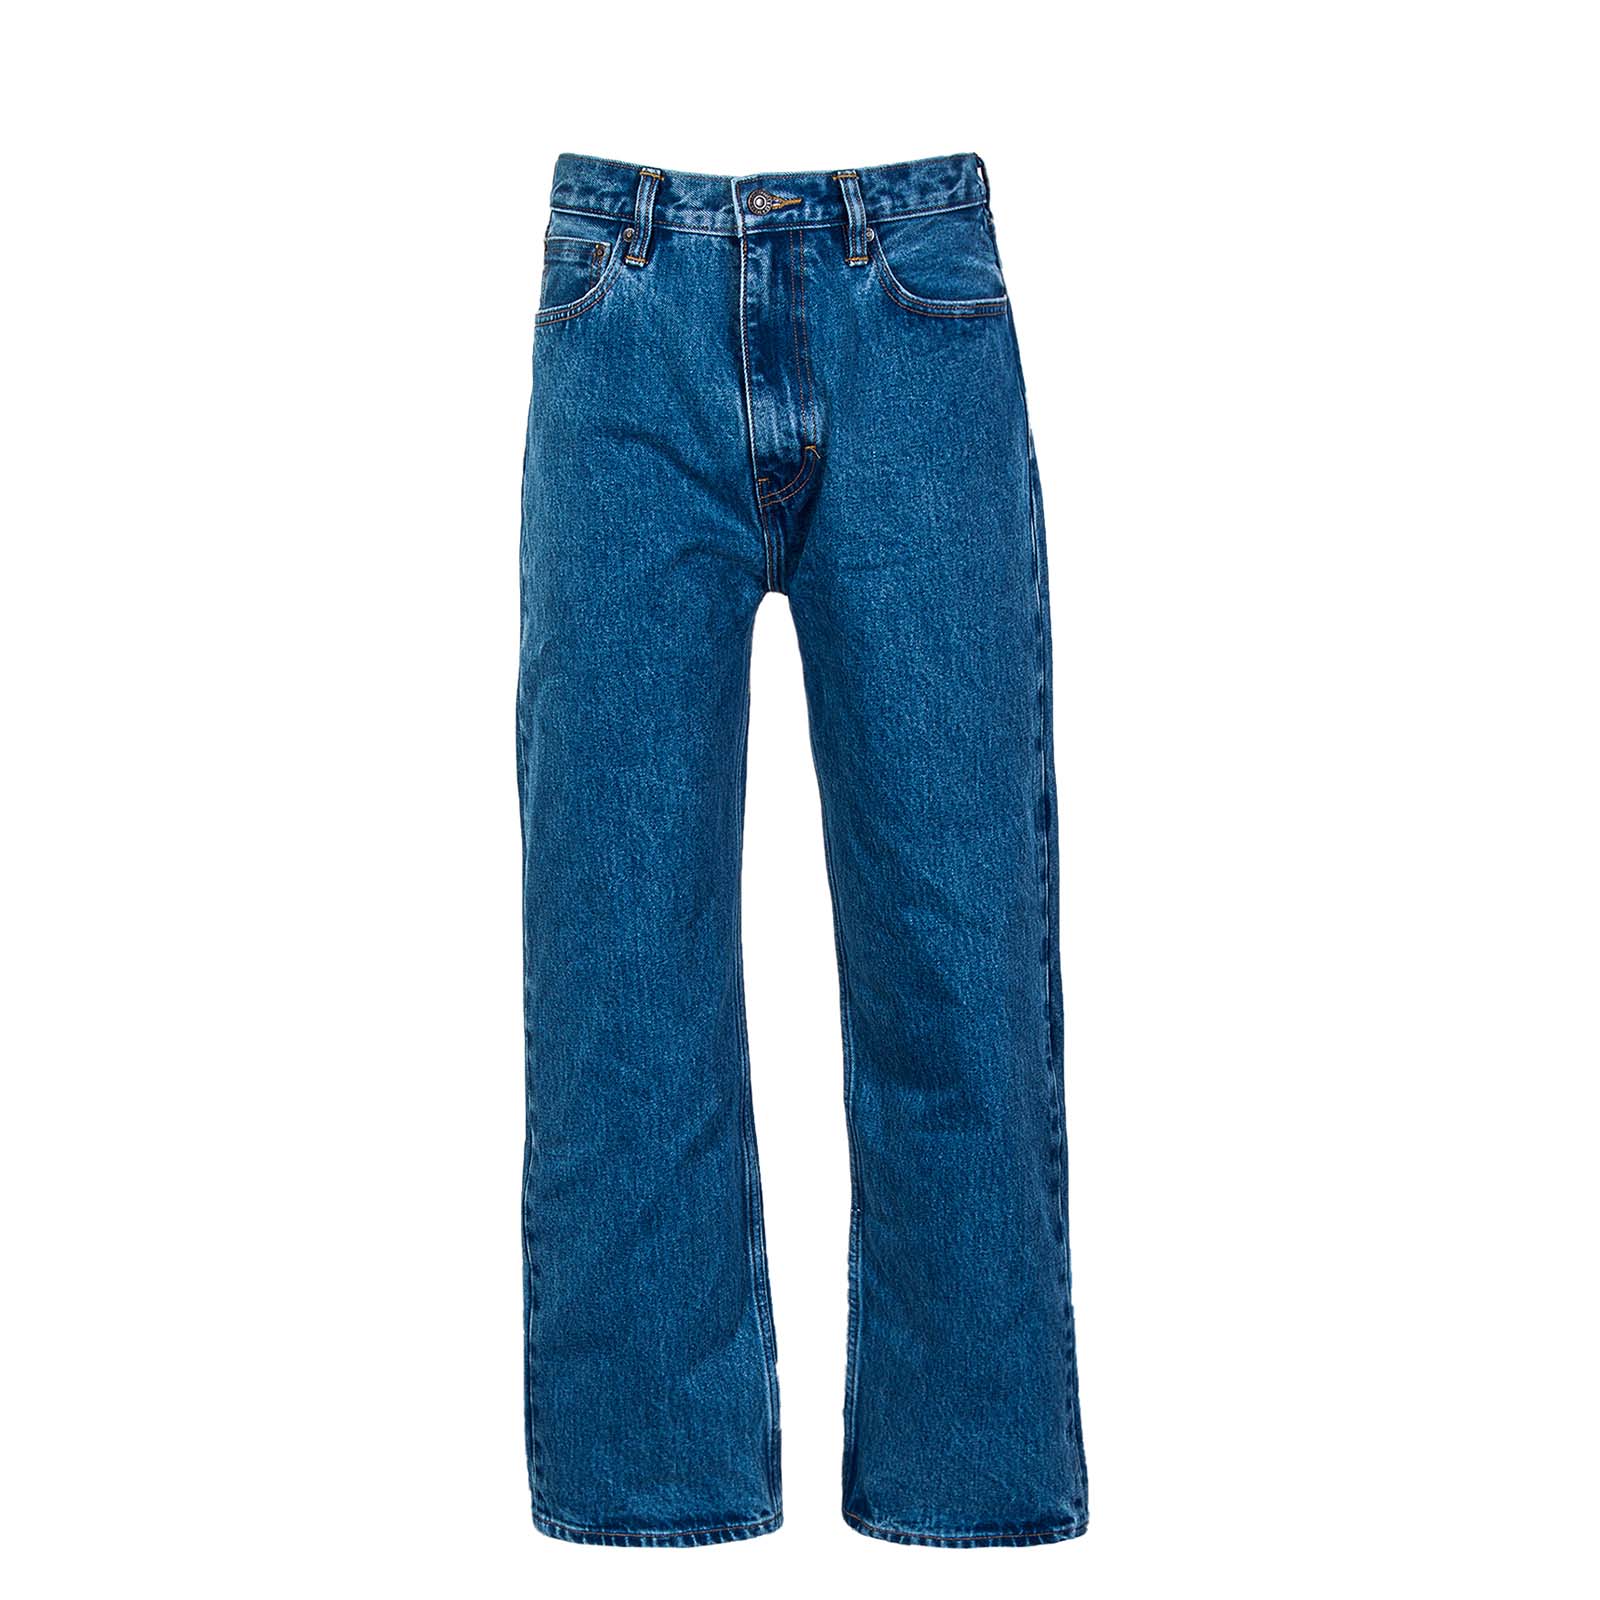 джинсы скинни levi s размер 27 синий Джинсы Levi´s, синий